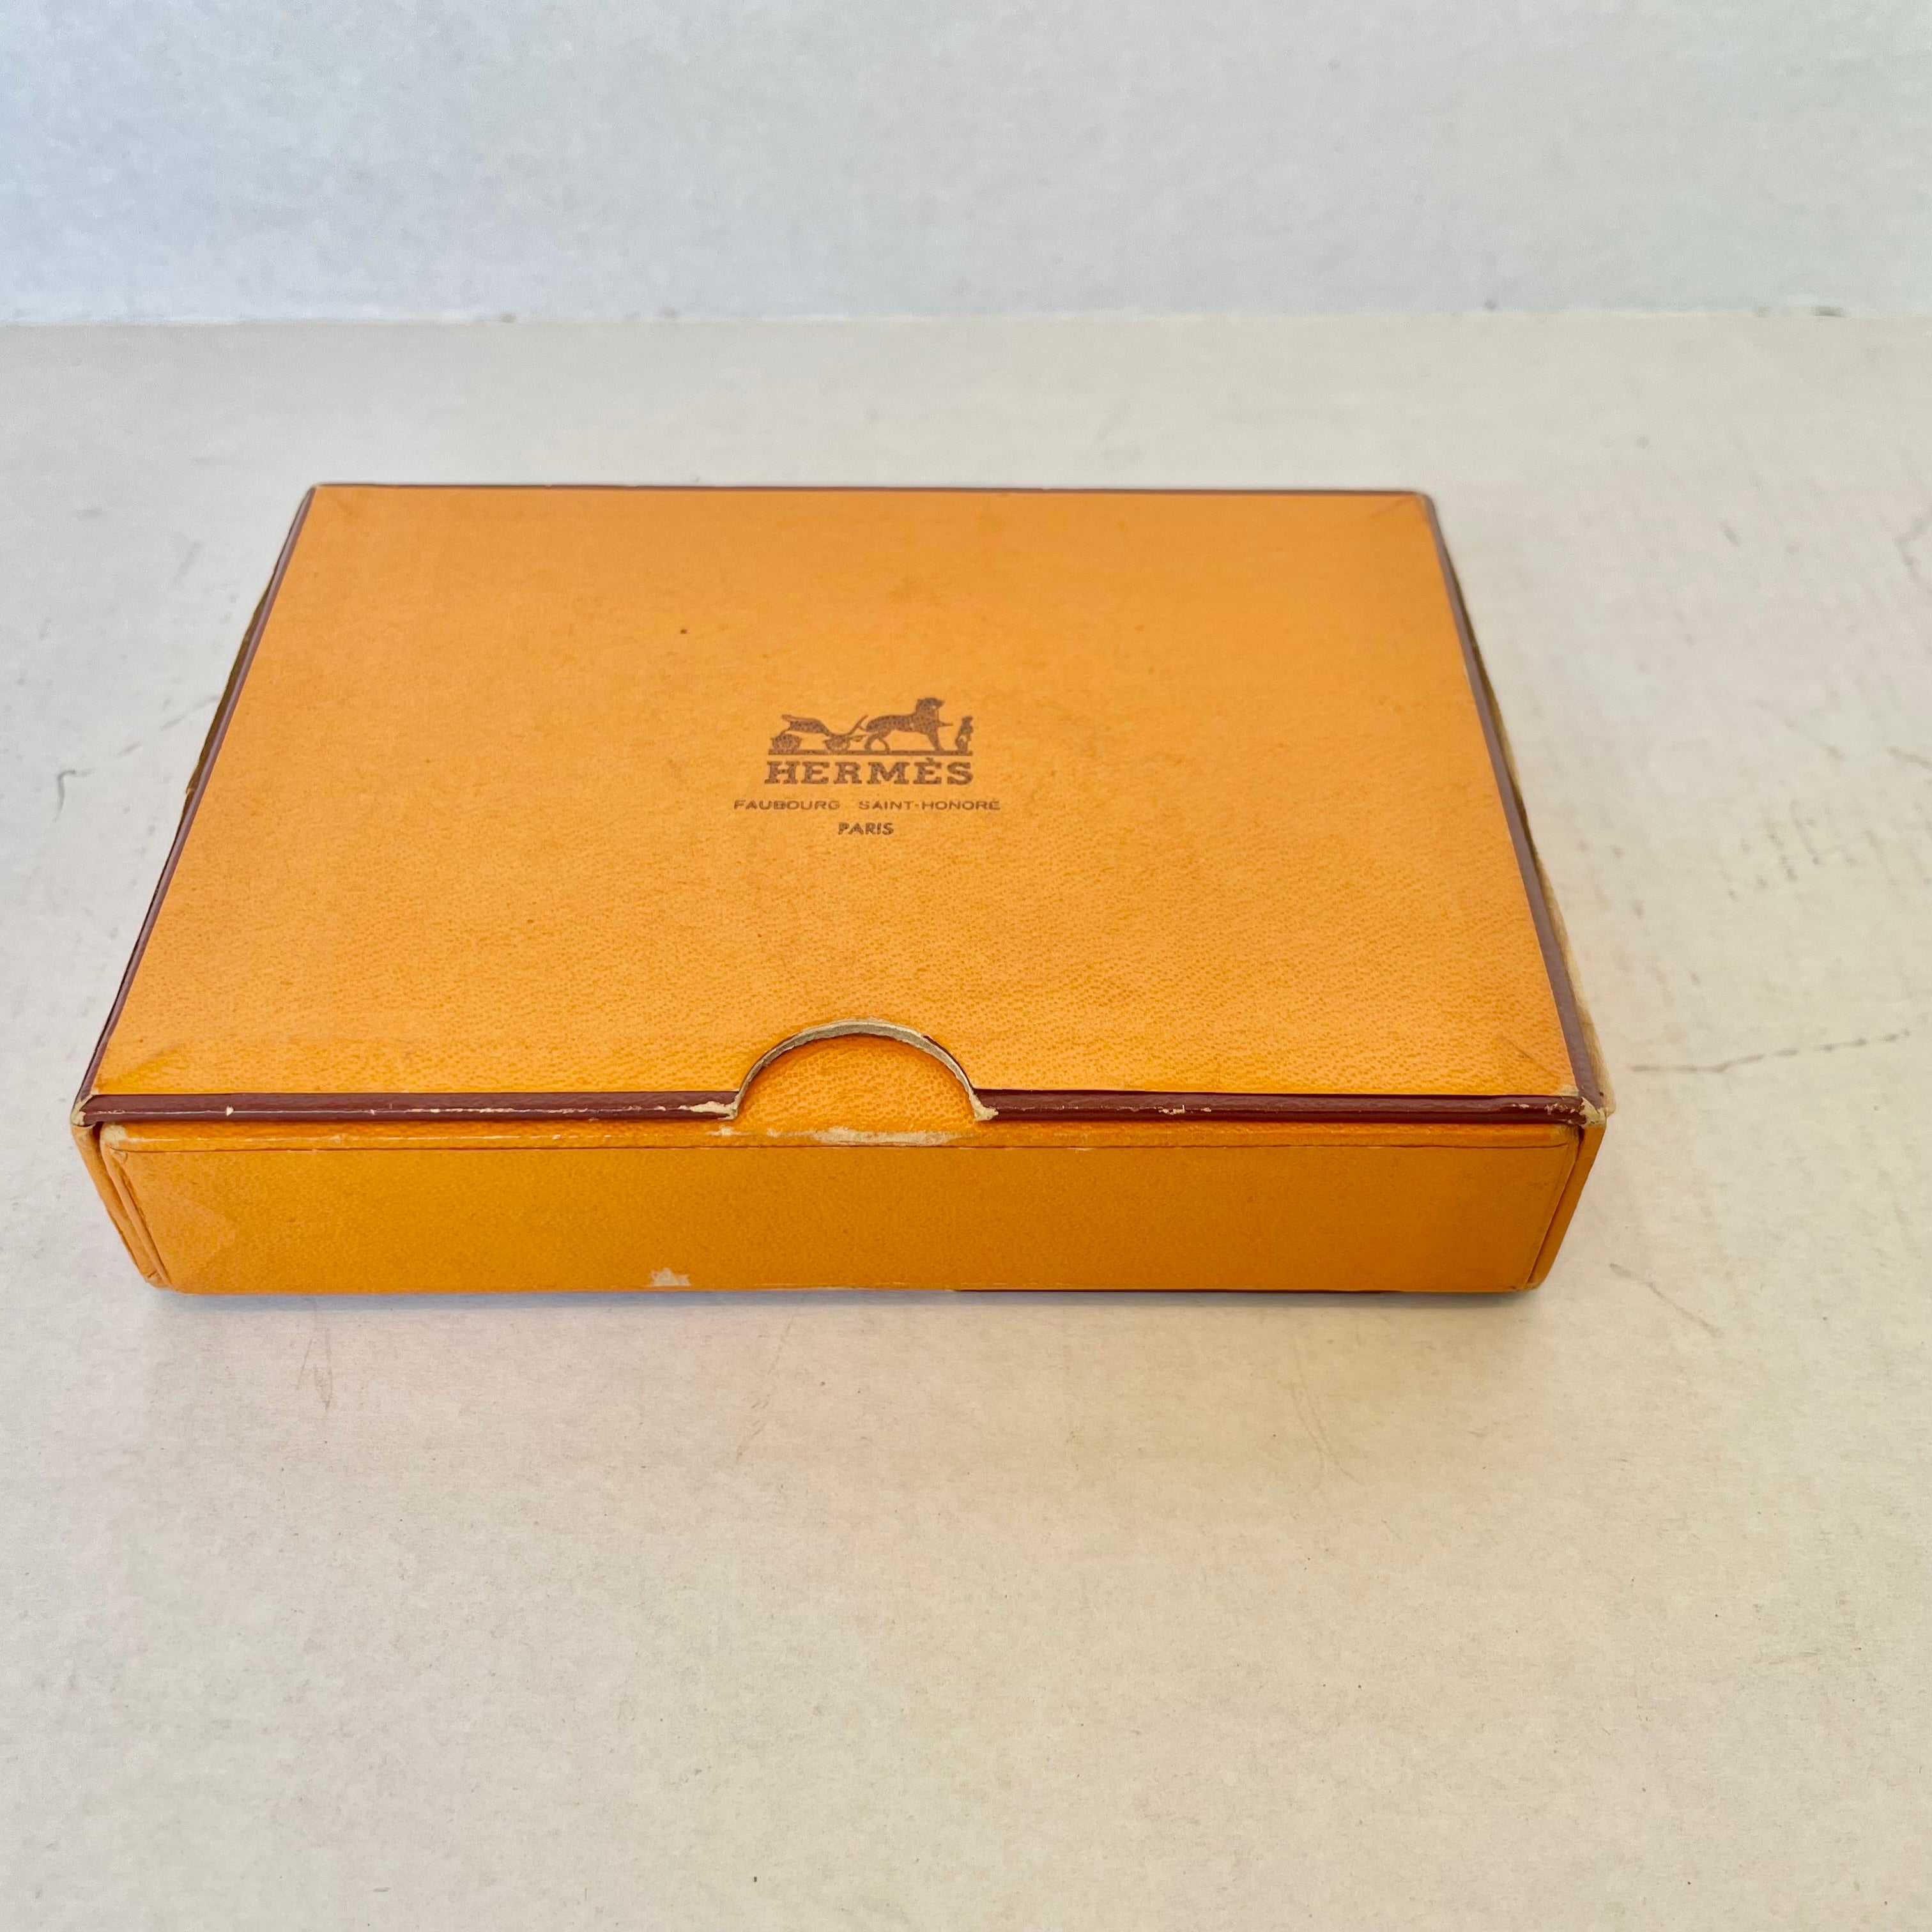 Hermes, Storage & Organization, Hermes Box Original Packaging